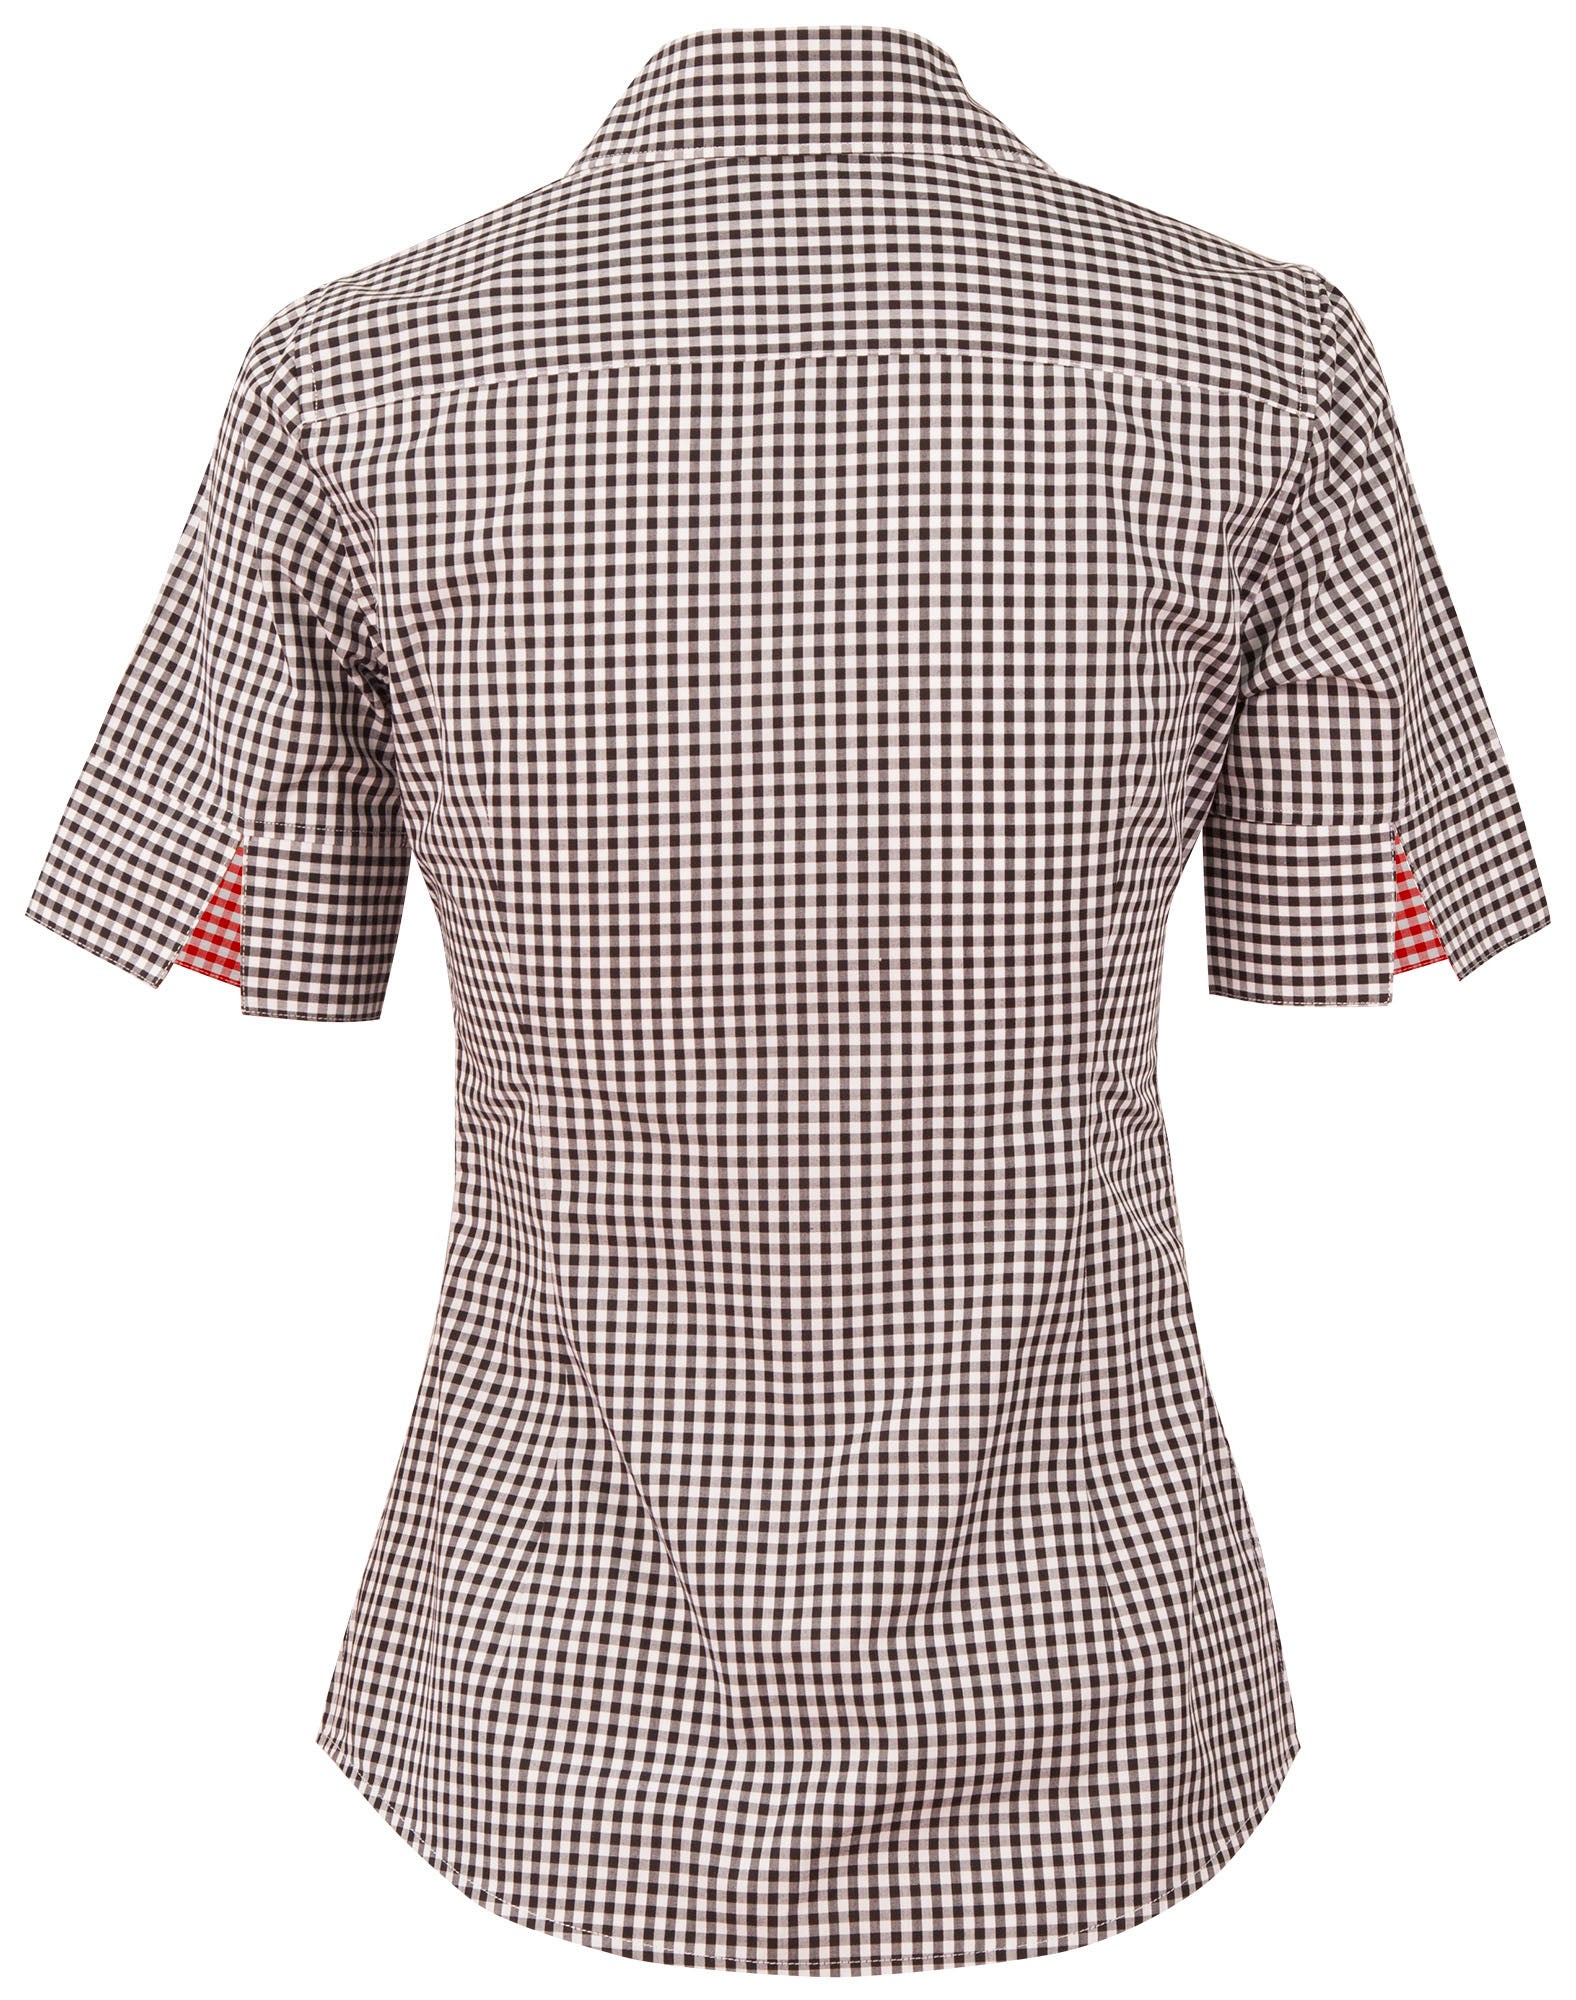 Winning Spirit Ladie's Gingham Check Short Sleeve Shirt (M8330S)